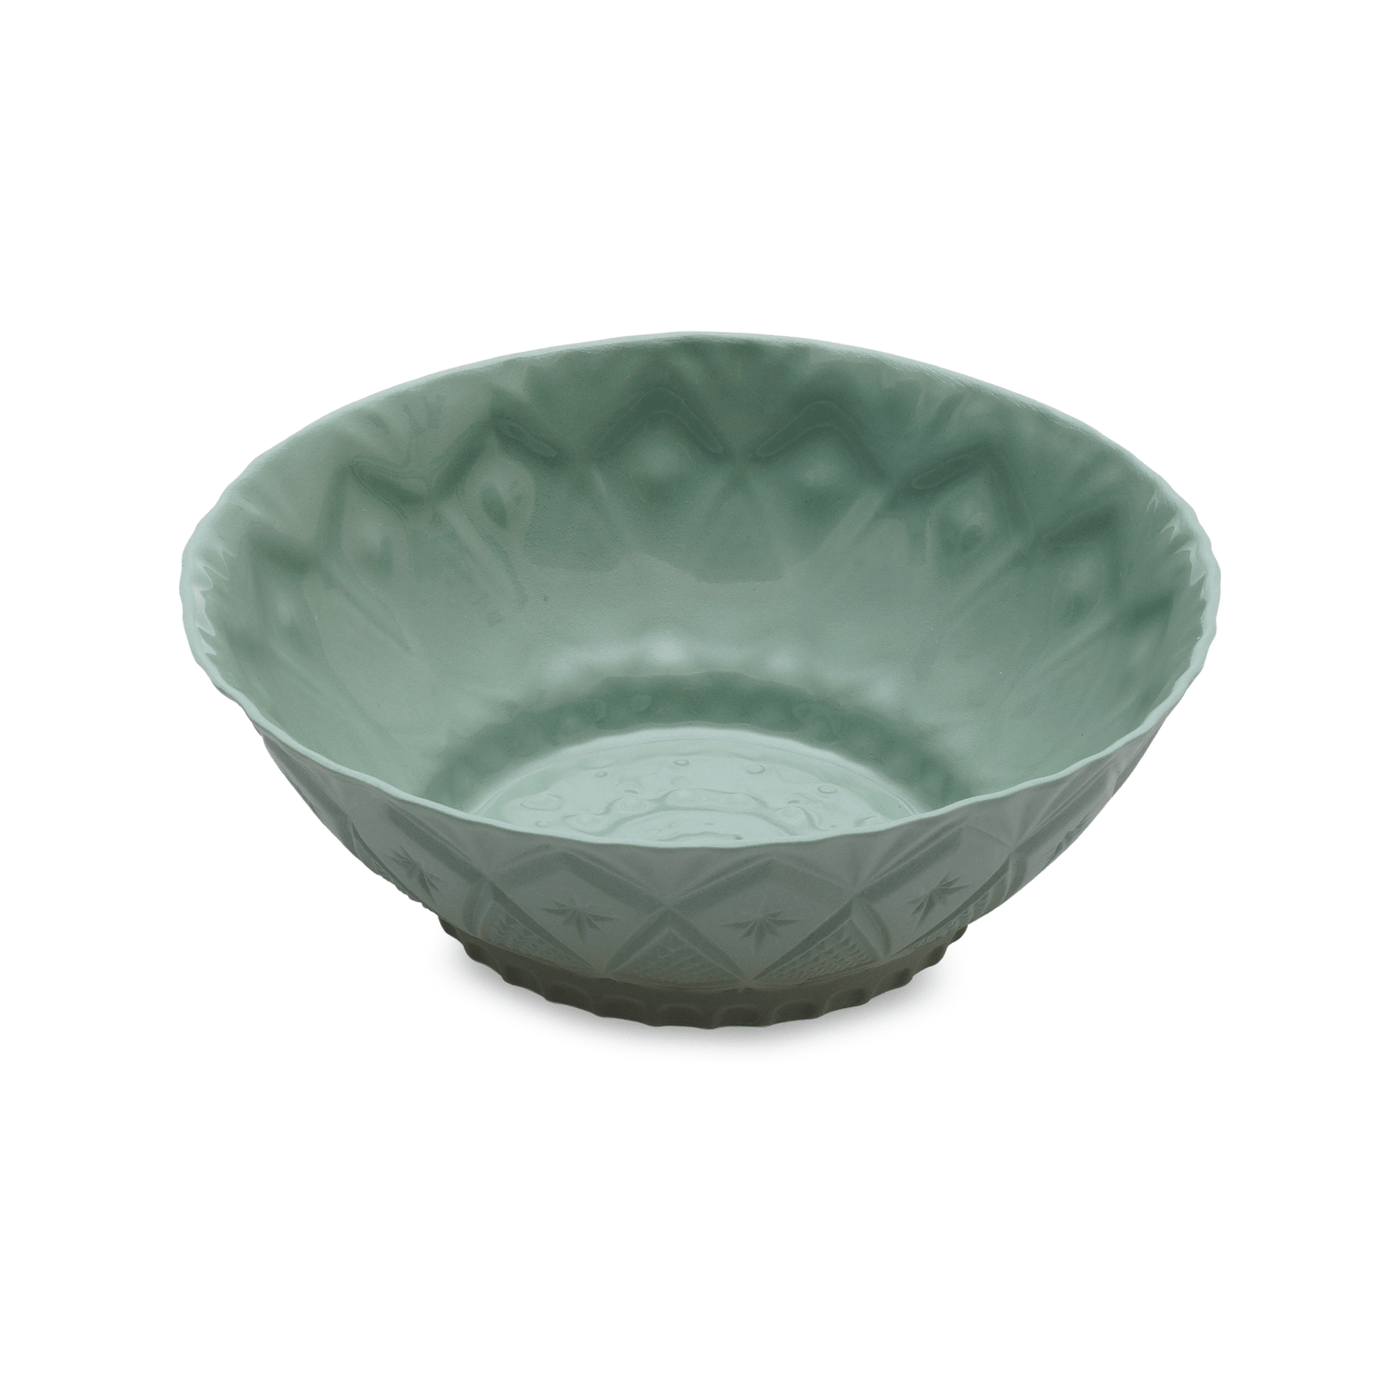 Geo Handmade Bowl, Light Green, 15 cm Bowls sazy.com